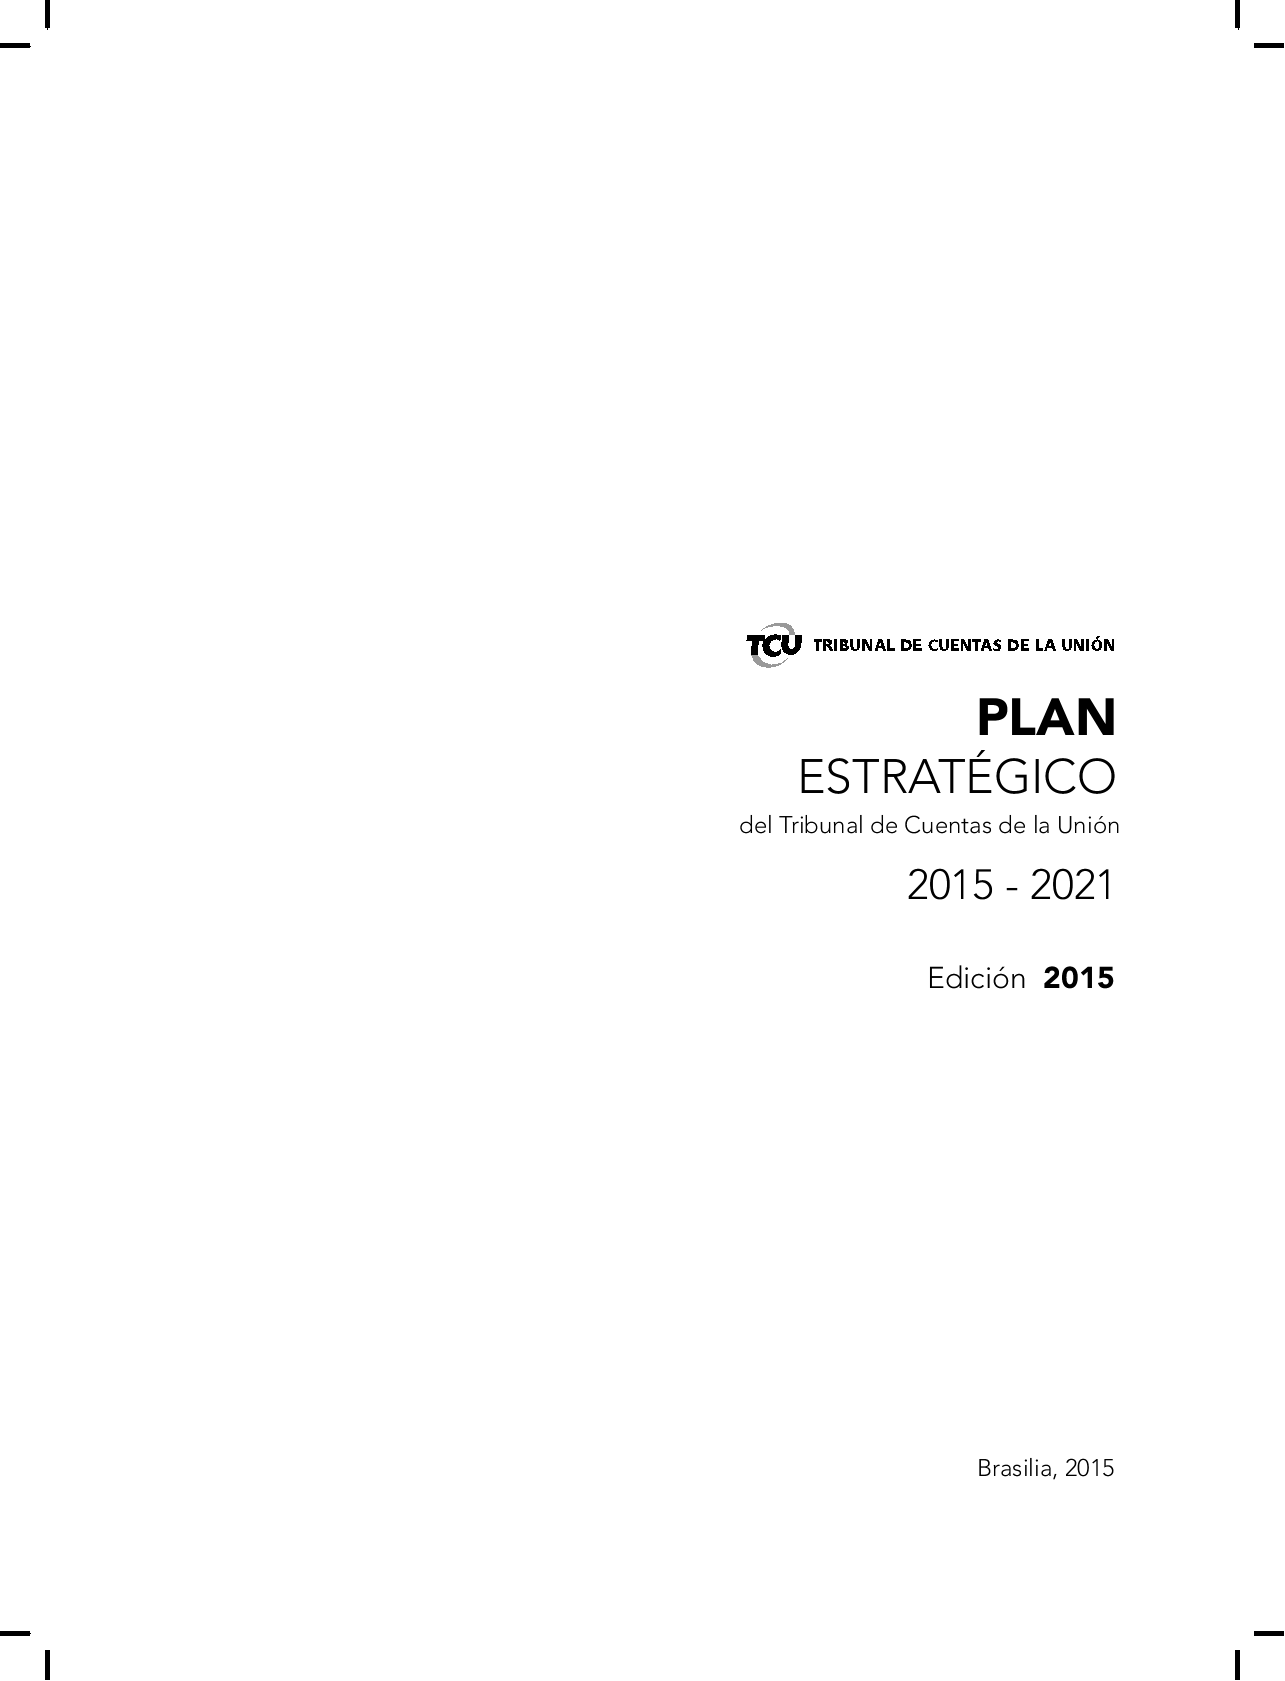 planejamento estrat_gico 2015_2021.png